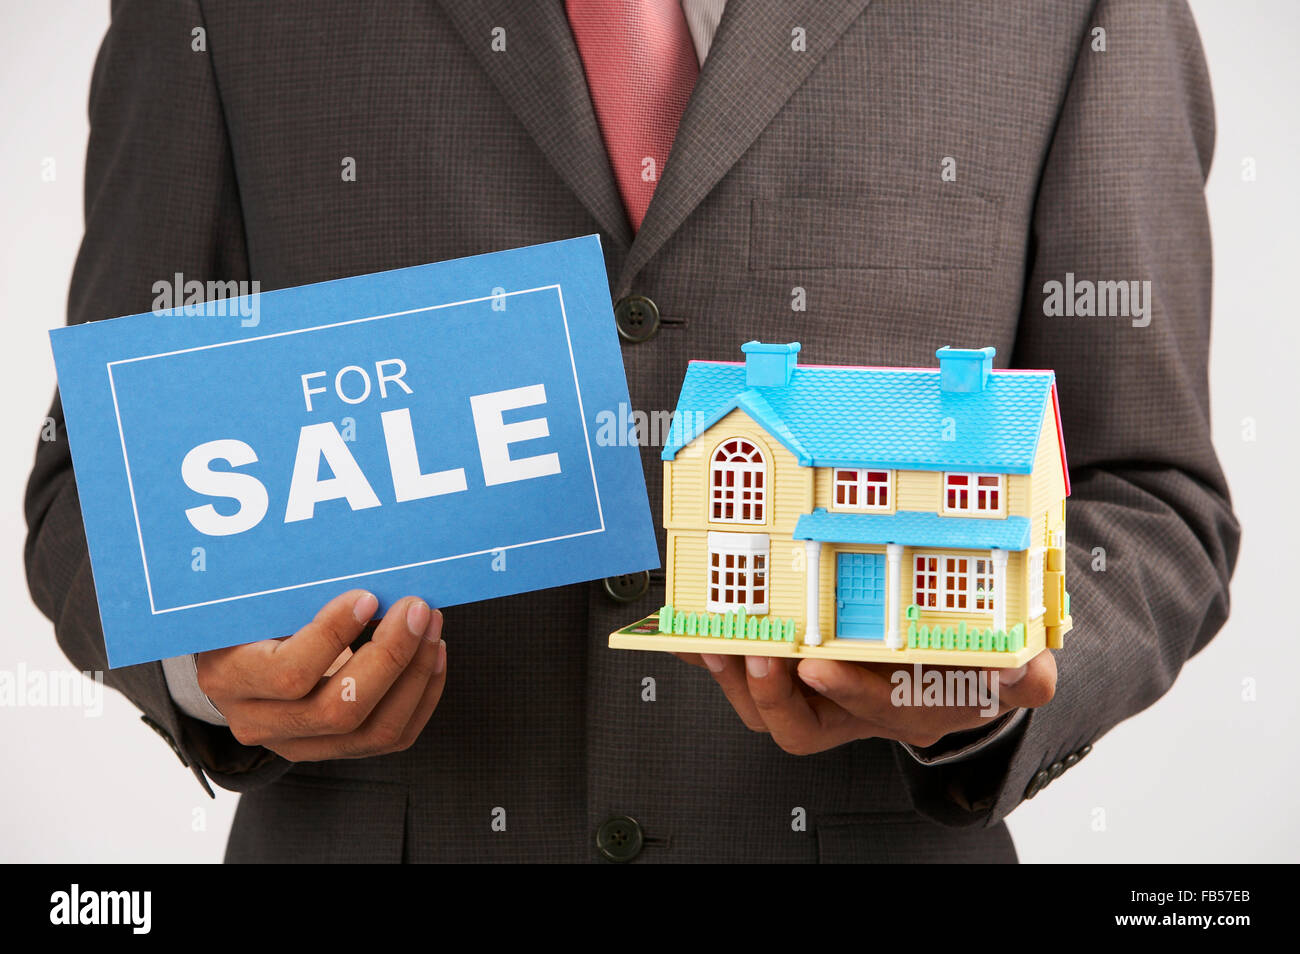 Нужно срочно продать. Хотите продать квартиру. Инвестор в недвижимость. Дешевая недвижимость. Помогу продать ипотечную квартиру.